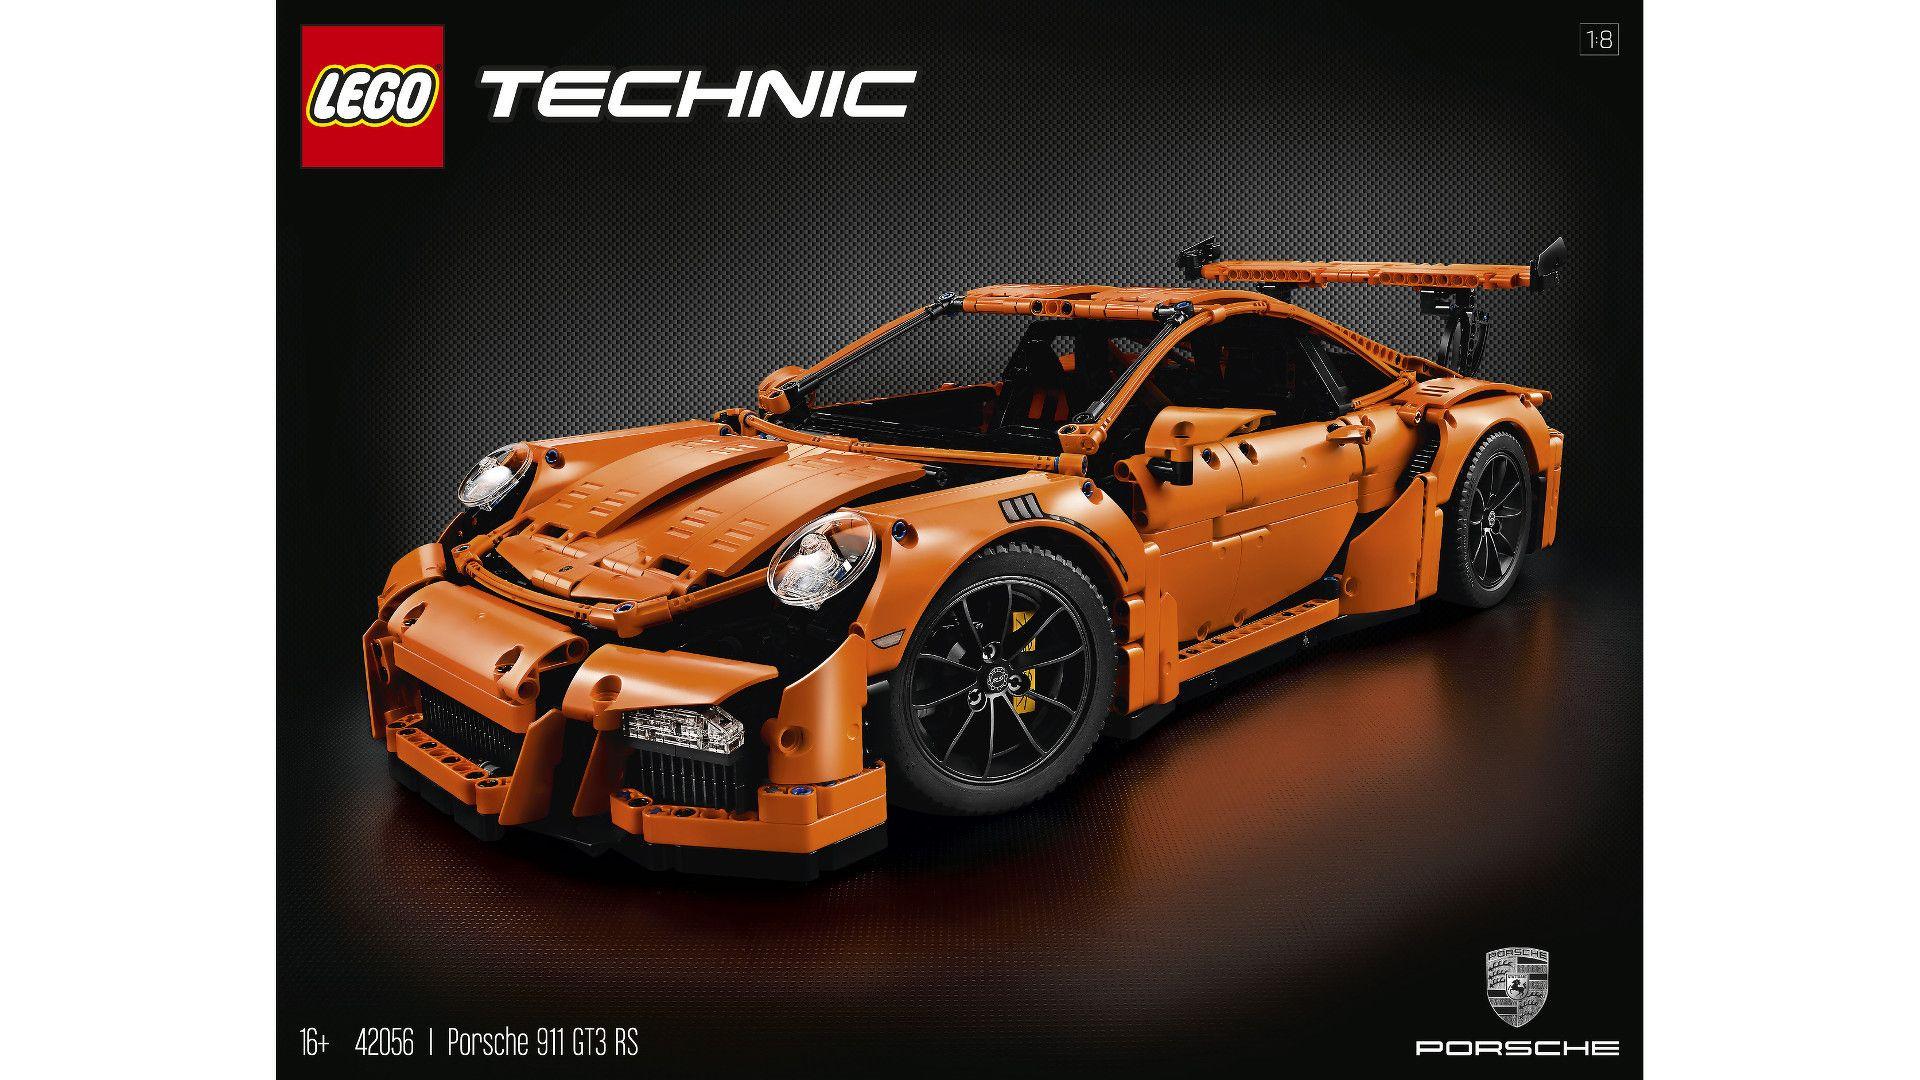 Lego Technic launches Porsche 911 GT3 RS